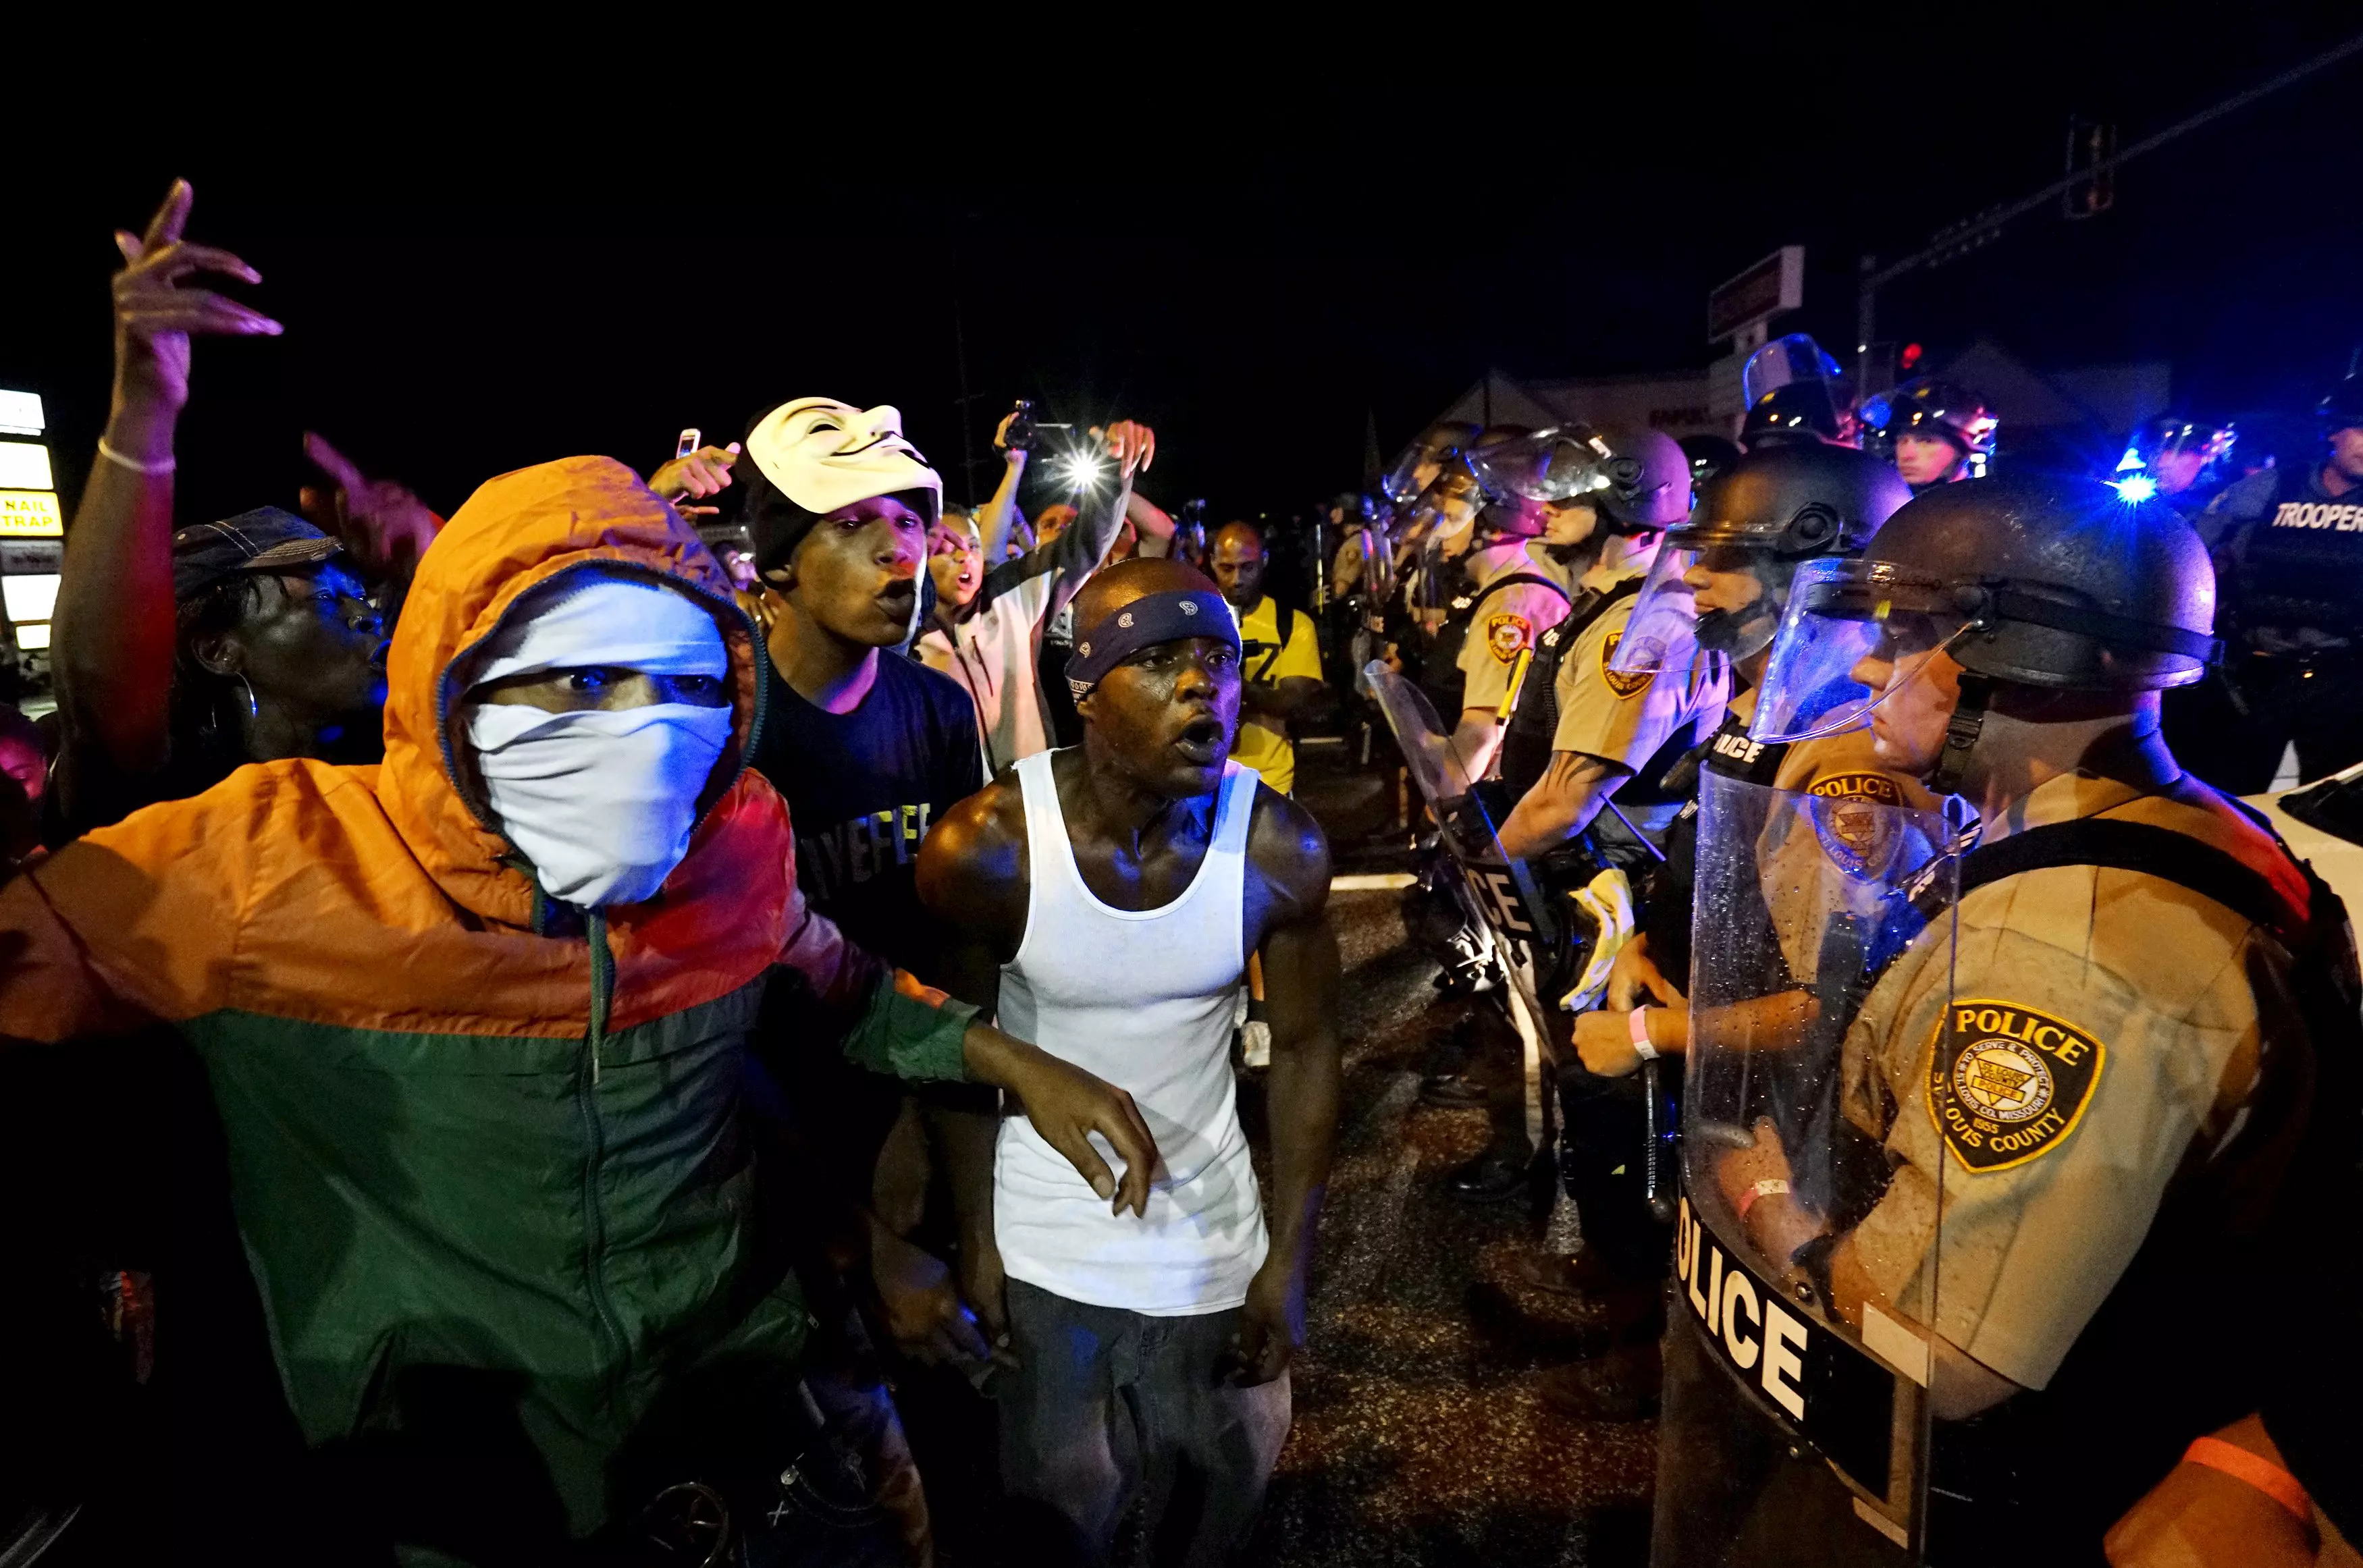 מפגינים מתעמתים מול שוטרים הלילה בפרגוסון, מיזורי